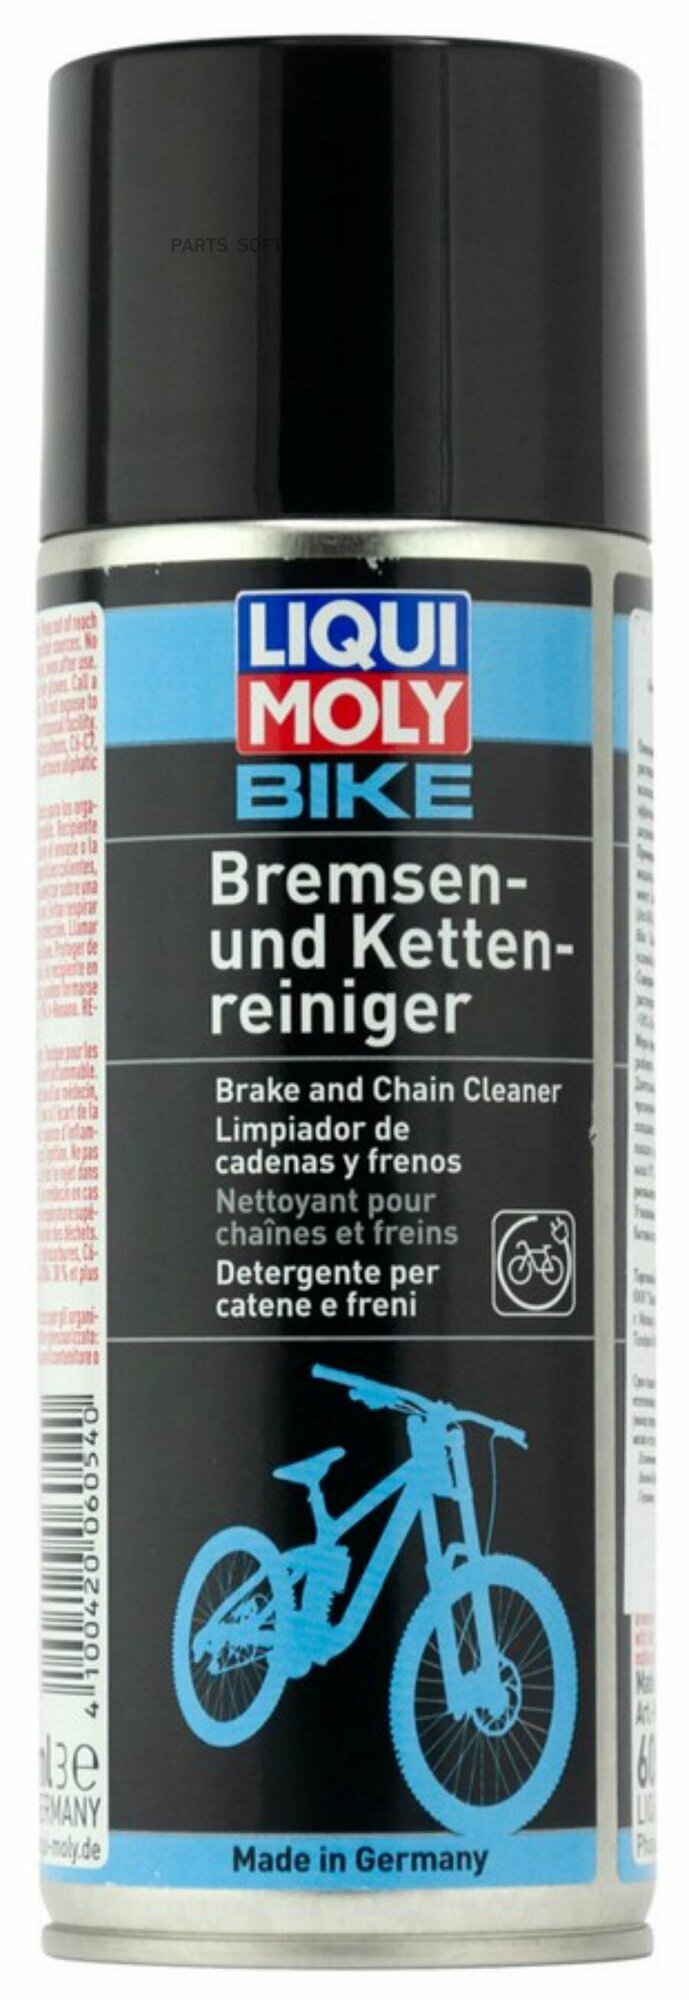 LIQUI MOLY 6054 Очиститель тормозов и цепей велосипеда Bike Bremsen- und Kettenreiniger (0,4л)